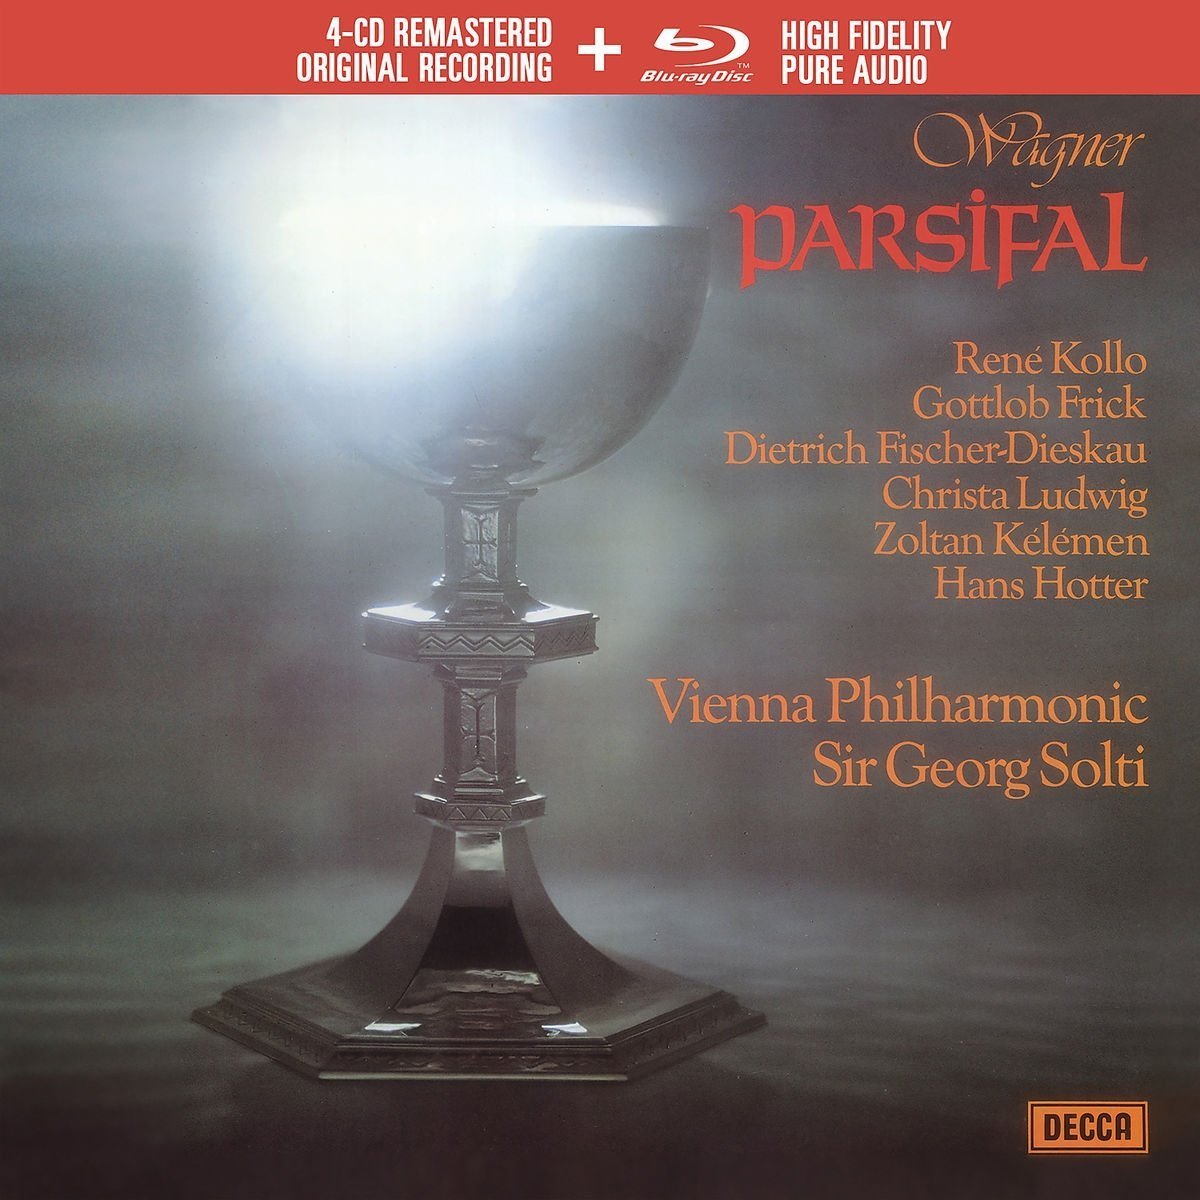 Parsifal [Blu-ray] [Import] wyw801m www.krzysztofbialy.com